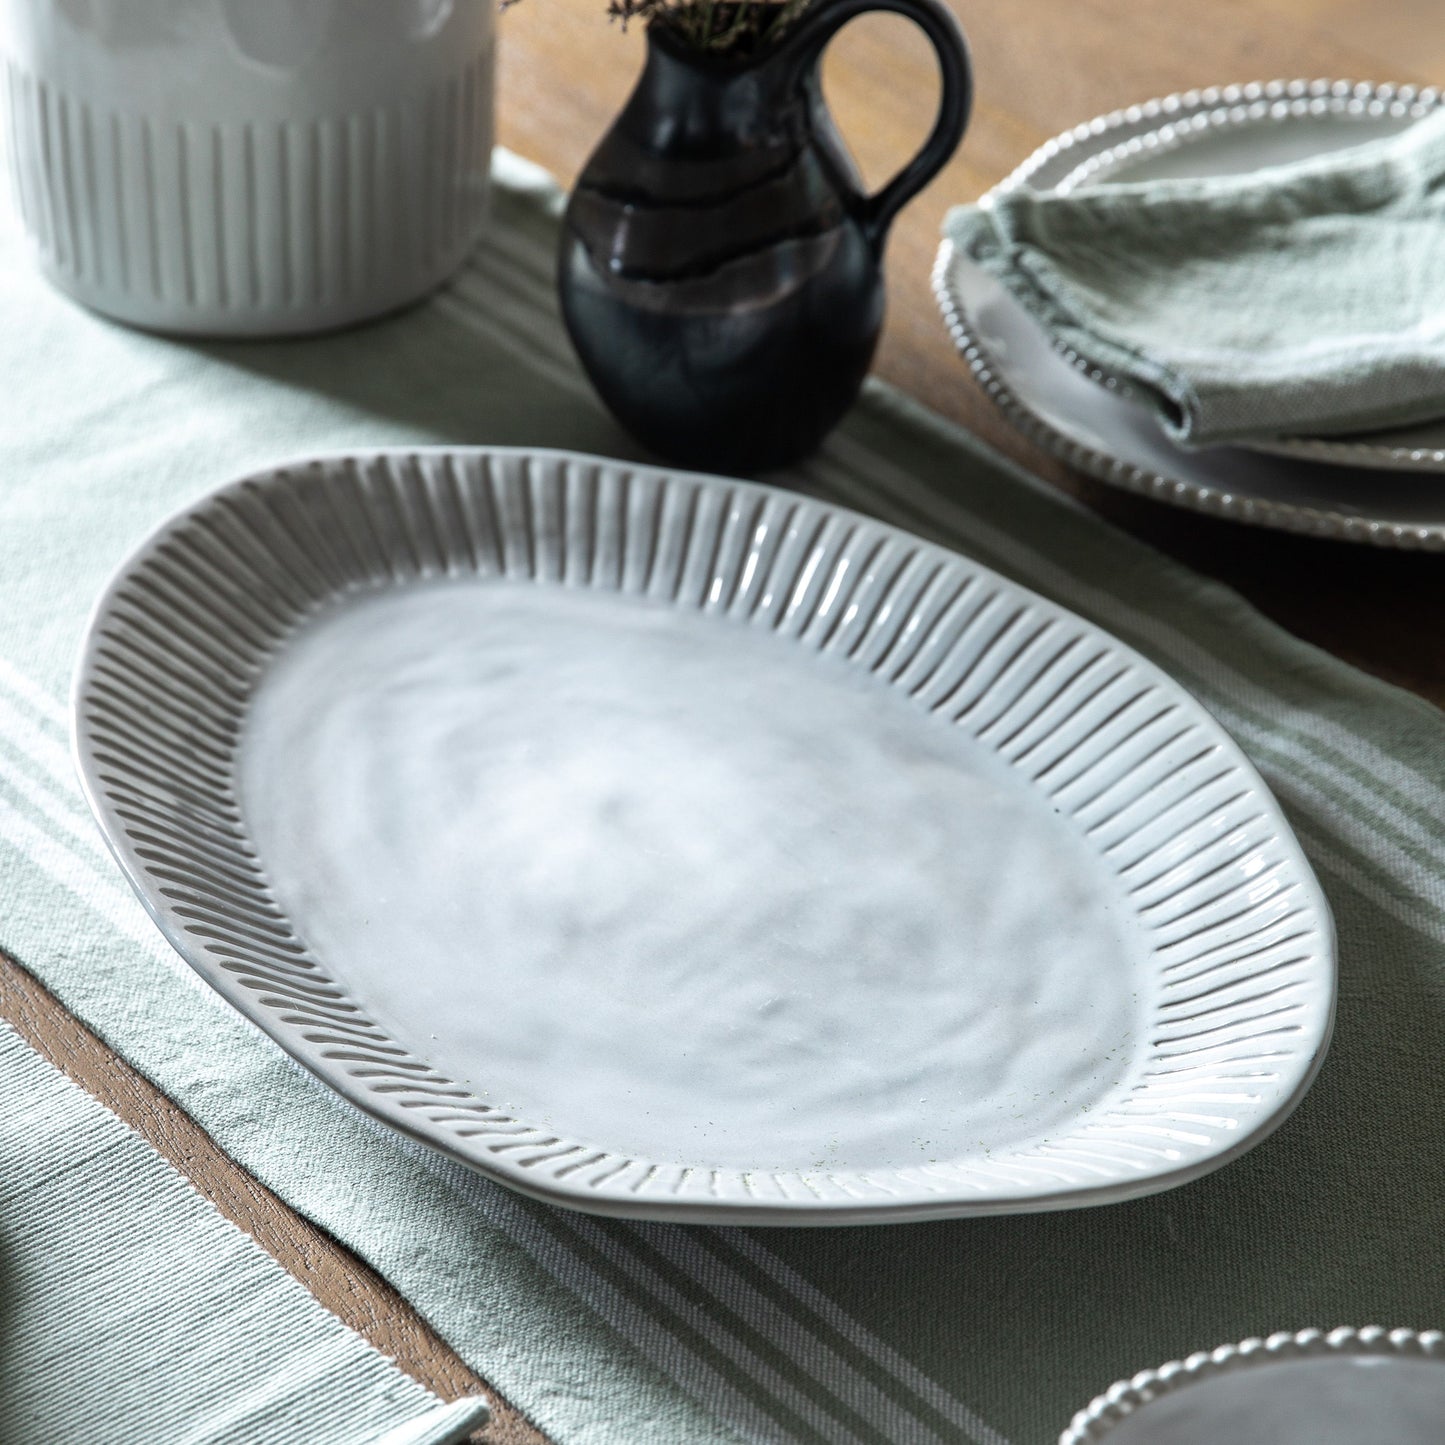 White Ridged Porcelain Platter